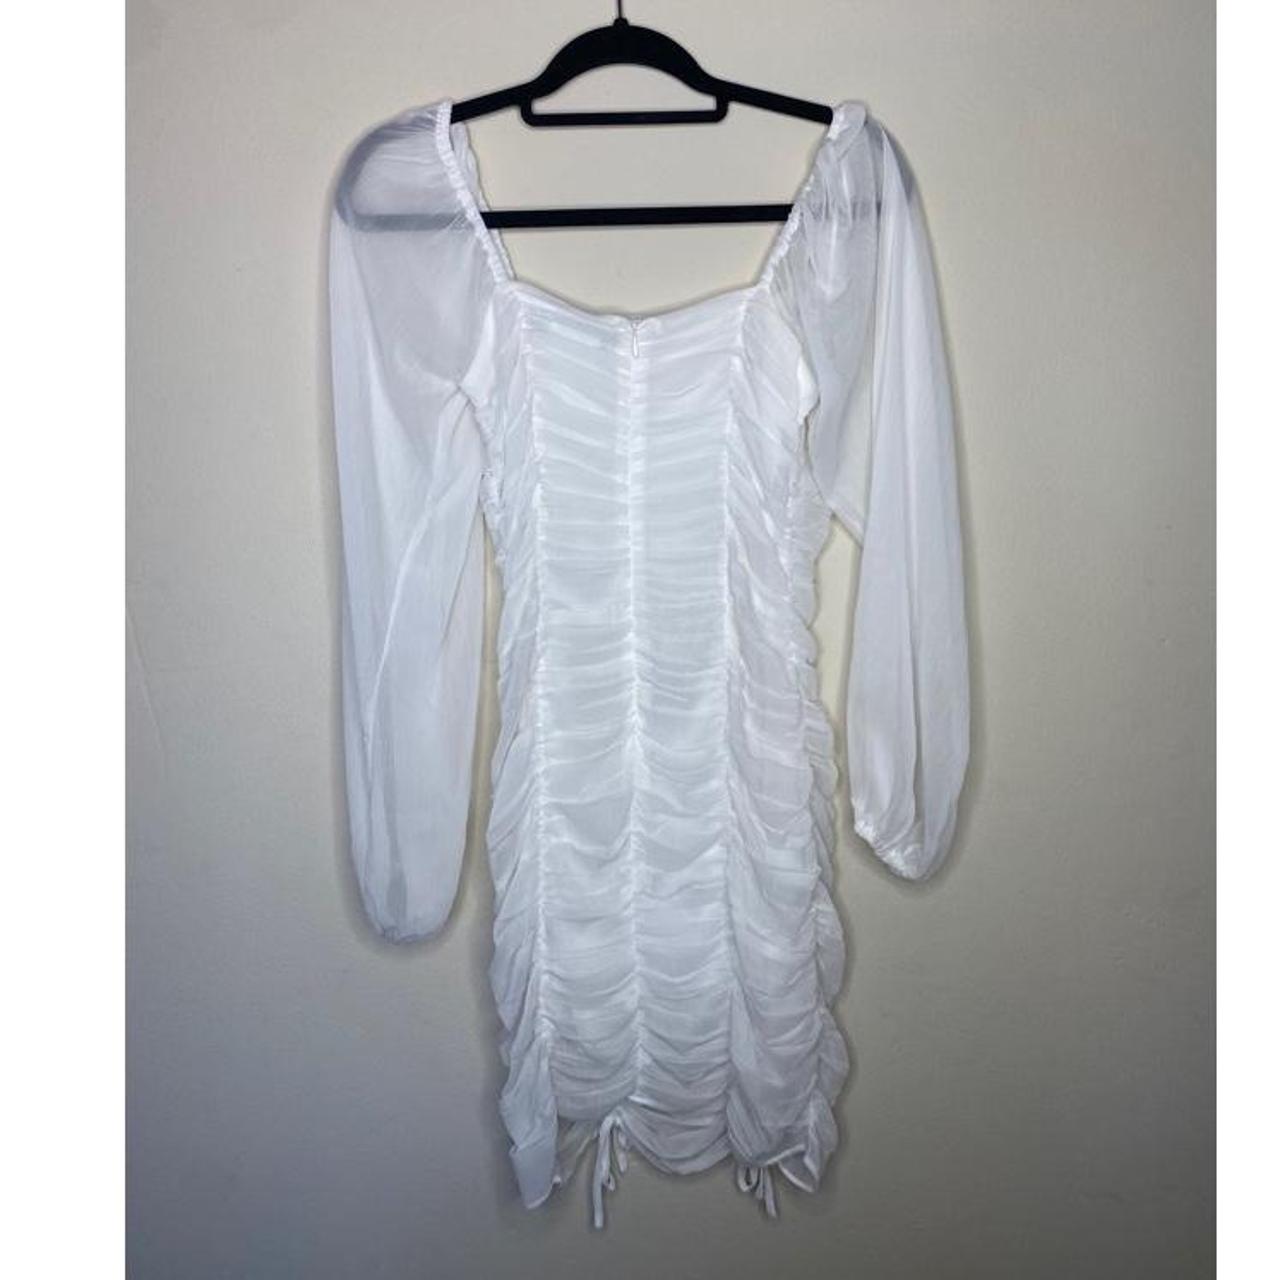 Glassons Women's White Dress | Depop